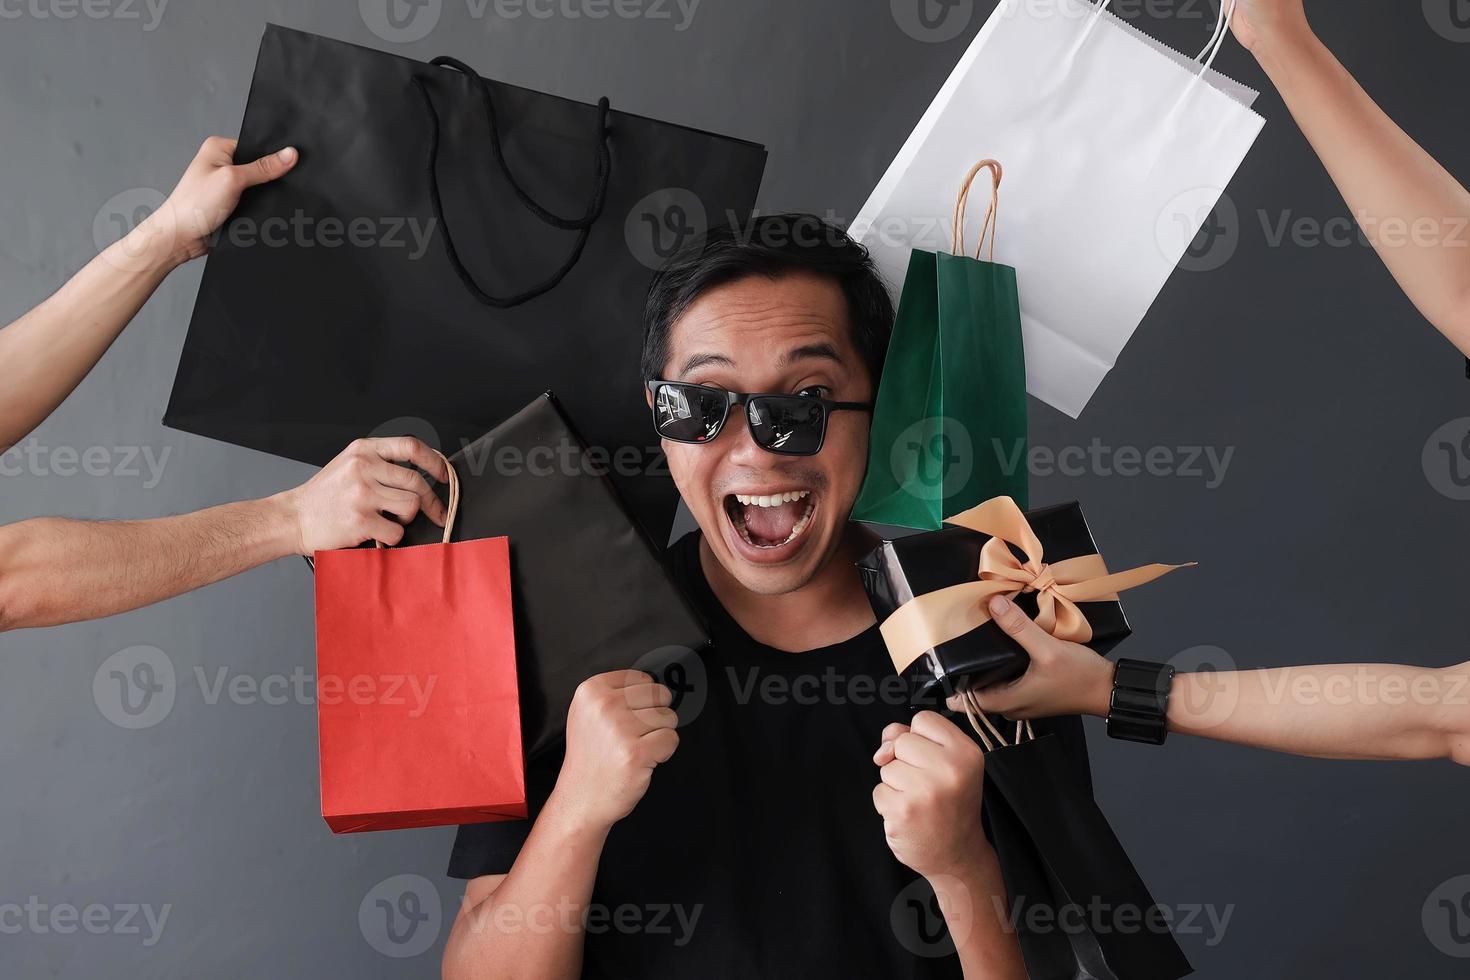 promoção de vendas de compras on-line engraçada com expressão boba homem viciado em compras por muitas mãos segurando sacolas de compras foto